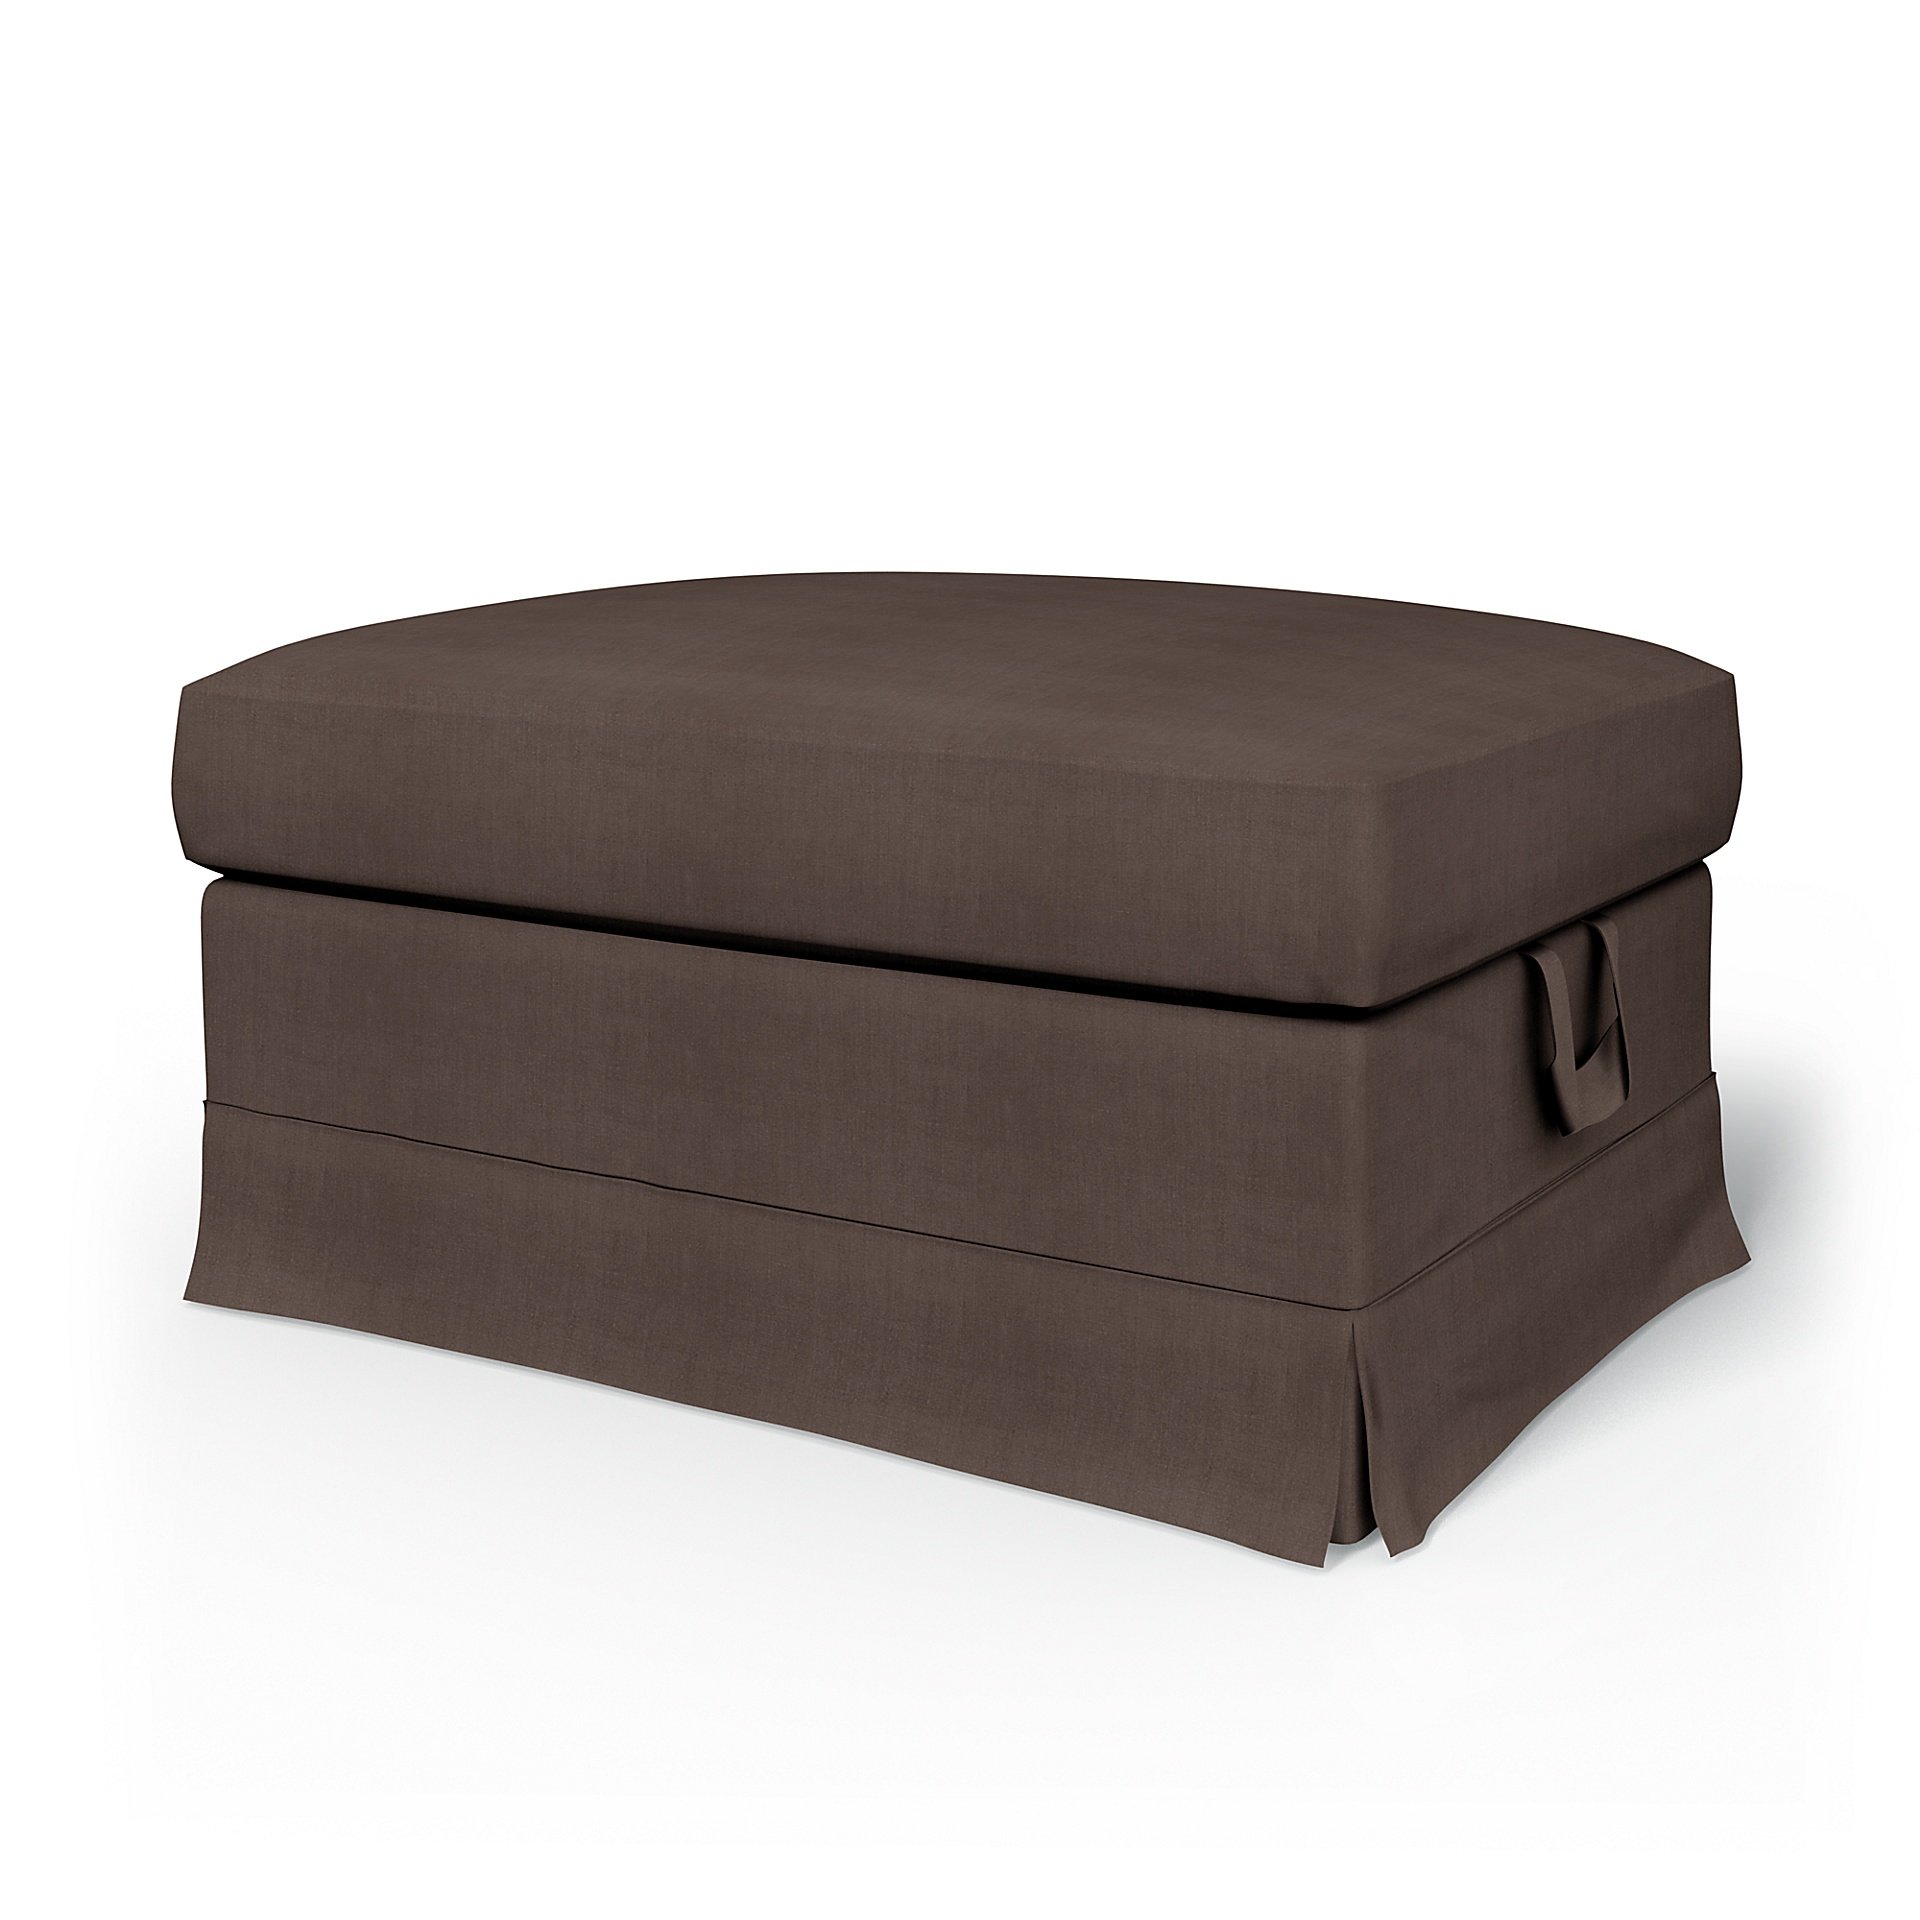 IKEA - Ektorp Footstool Cover, Cocoa, Linen - Bemz